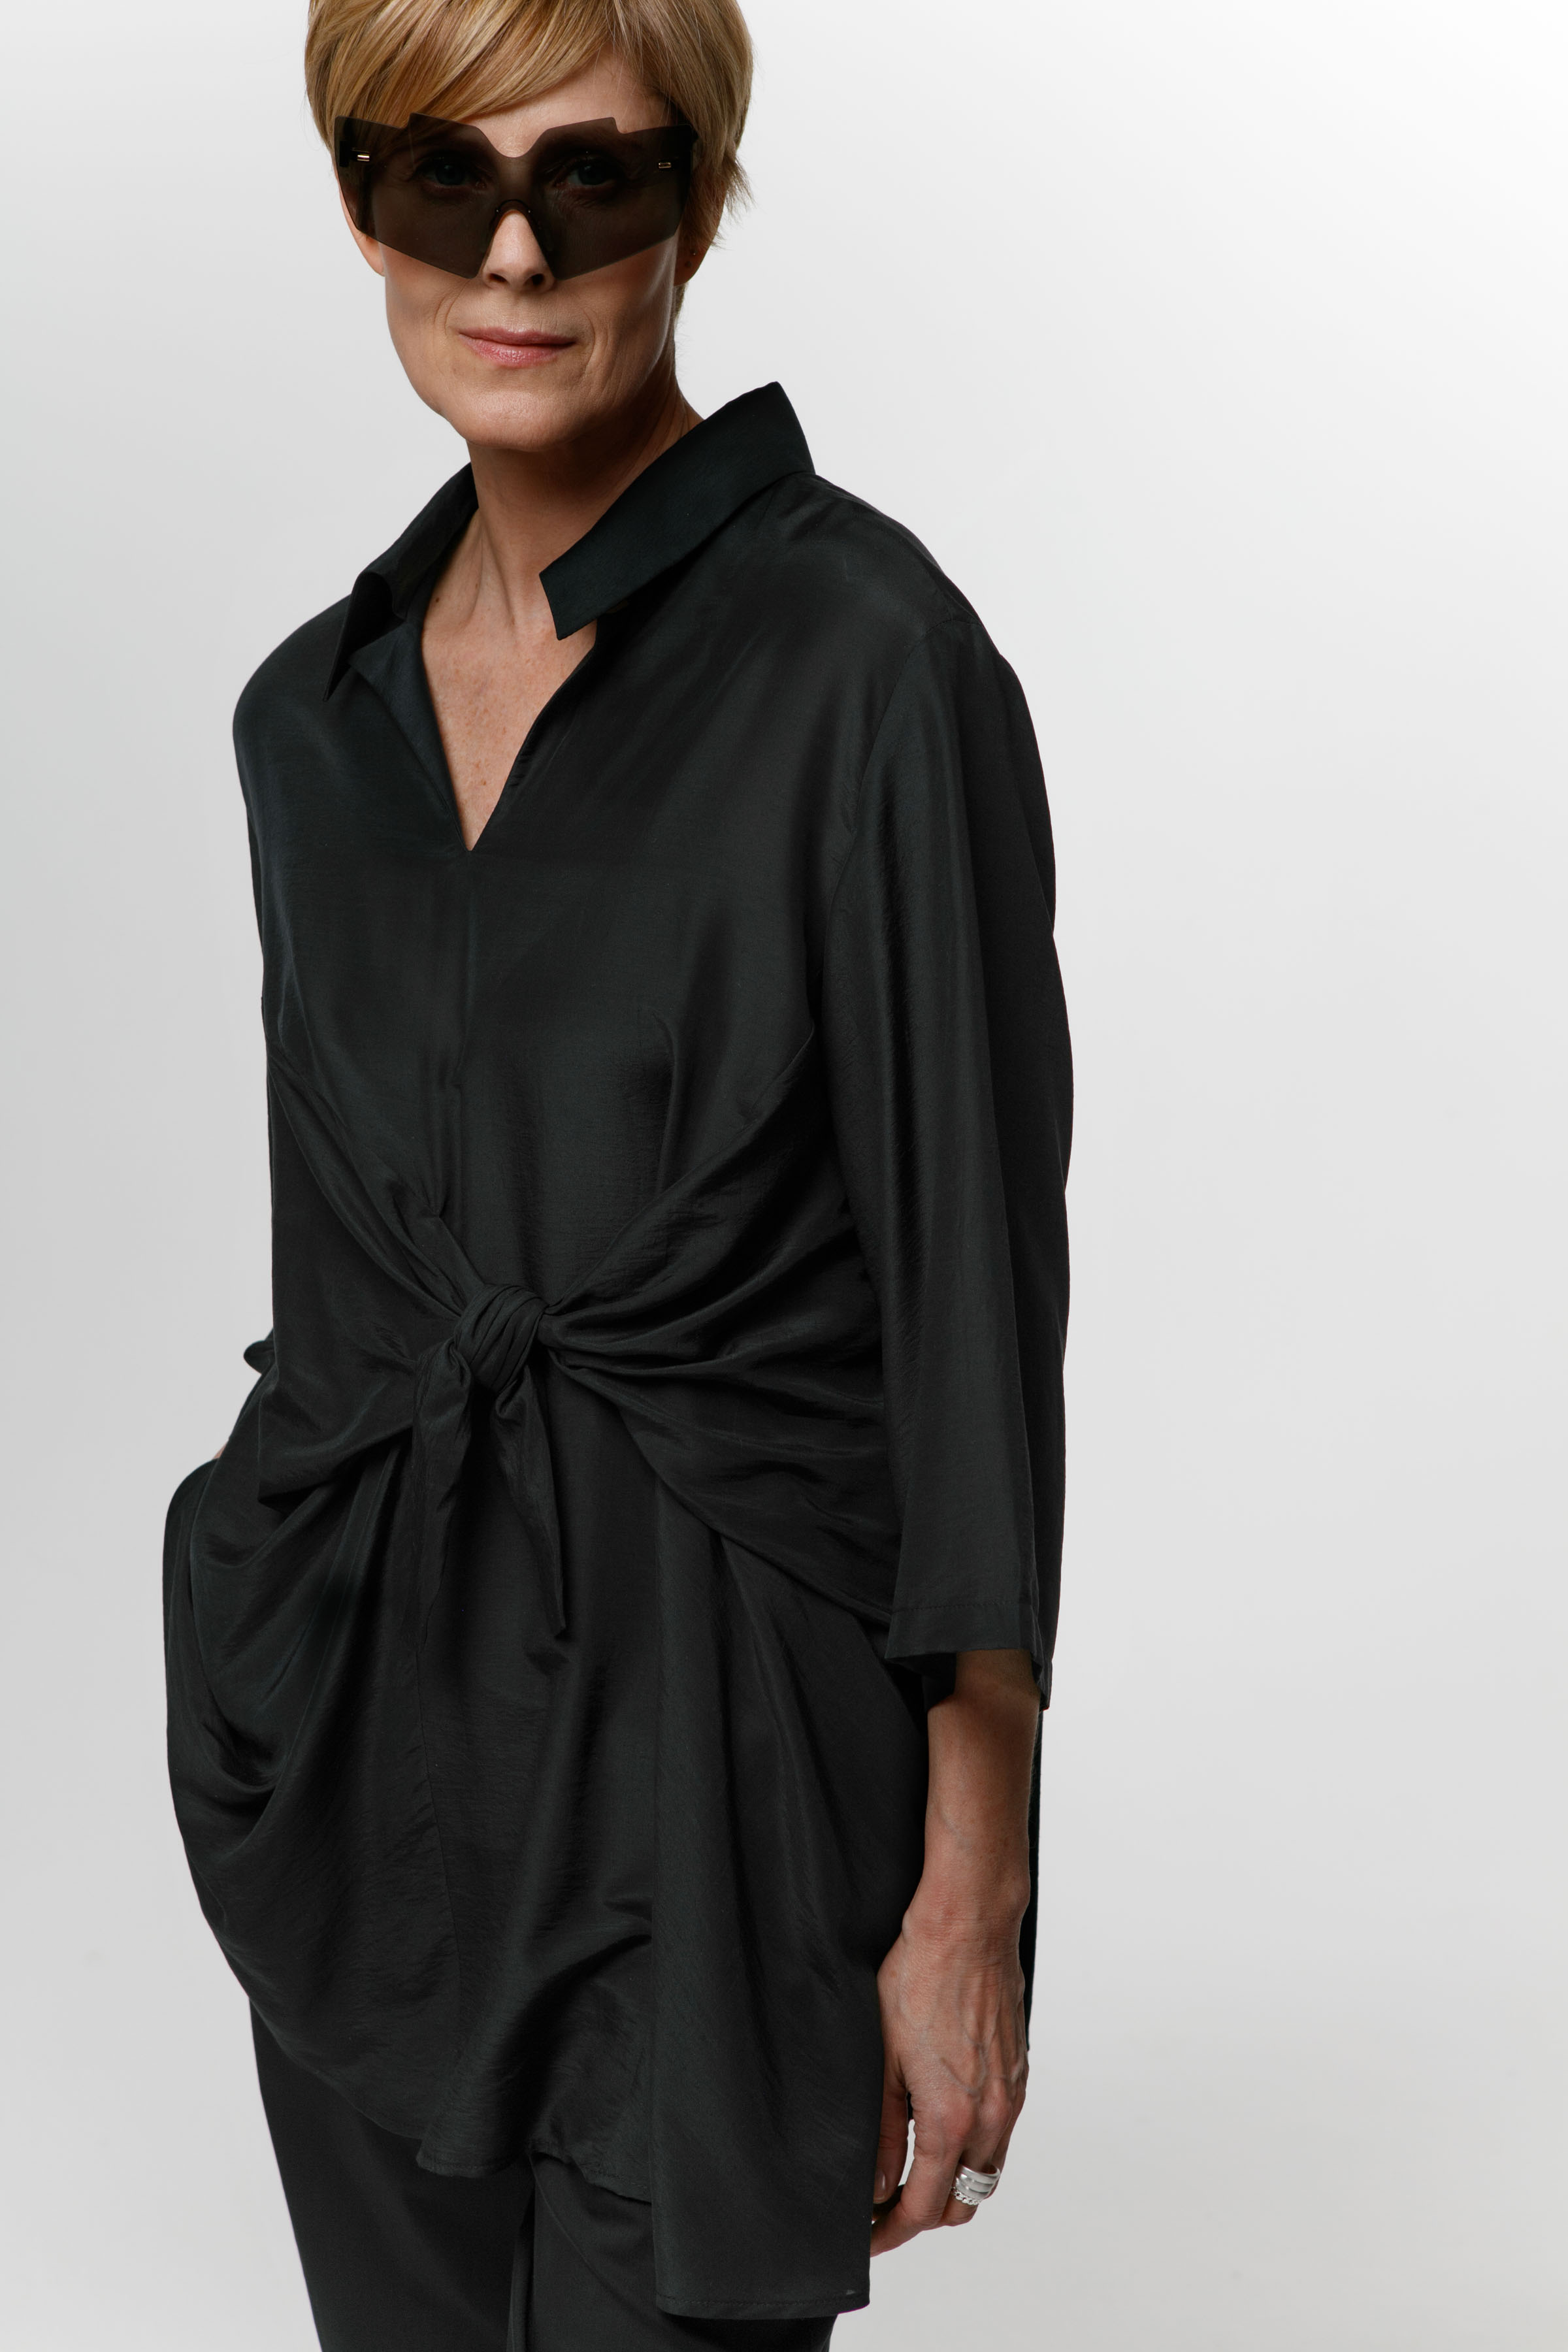 Блуза туника с узлом 00 Черный (noir) от Lesel (Лесель)! Заказывайте по ✆ 8 (800) 777 02 37